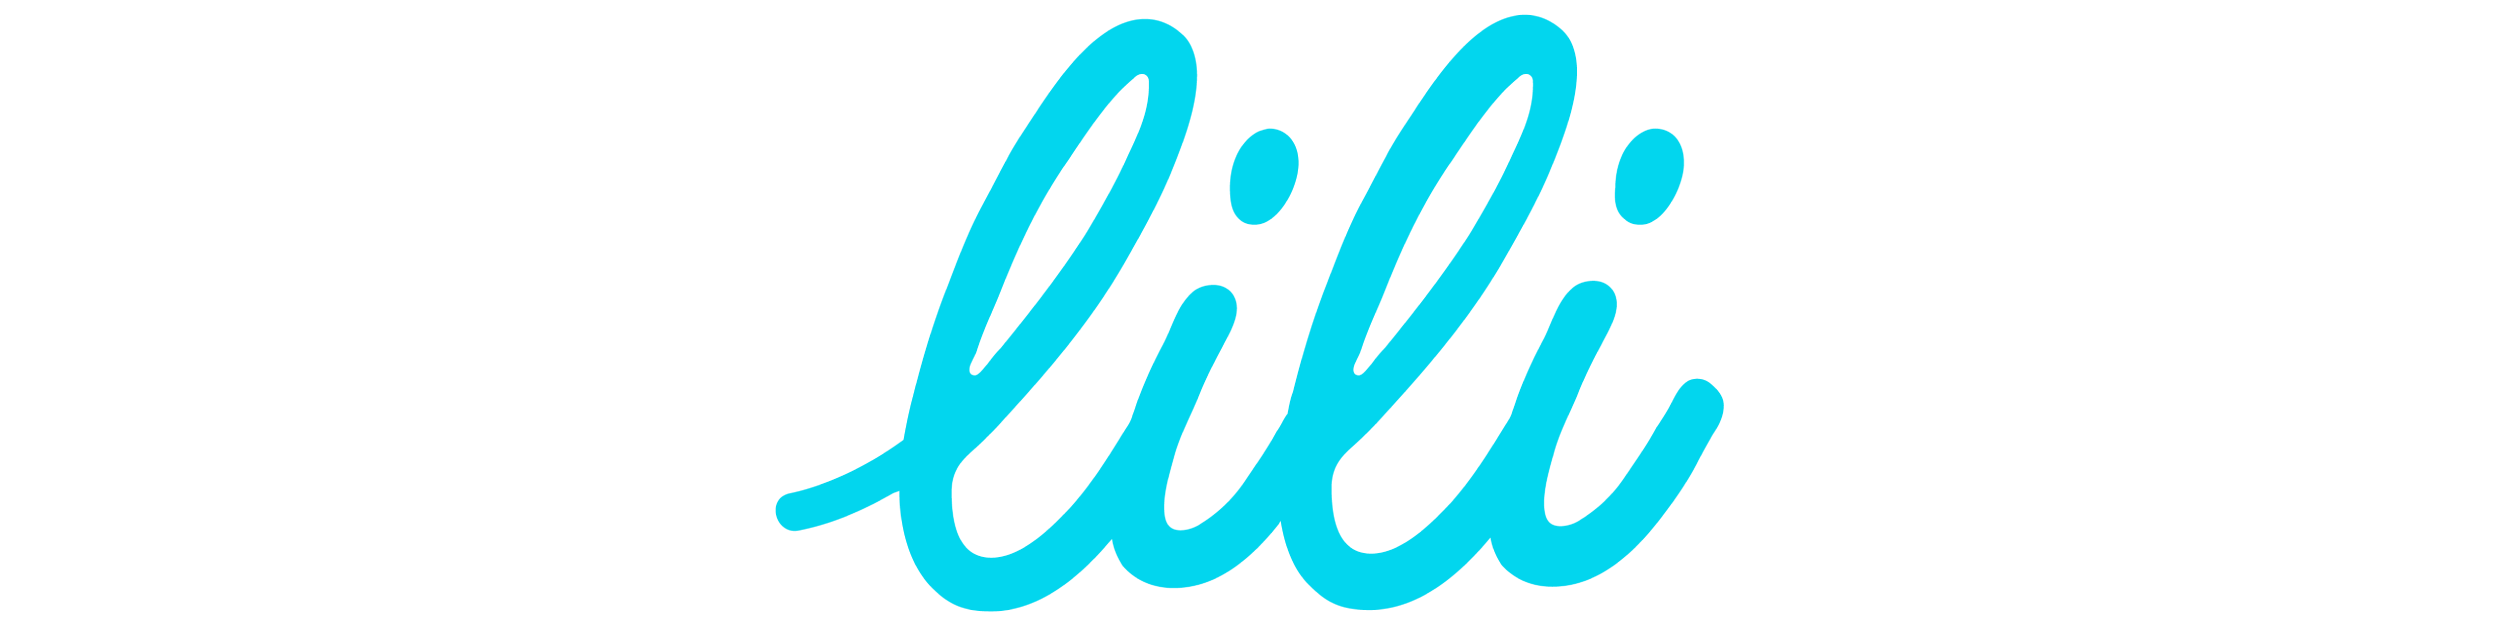 lili logo